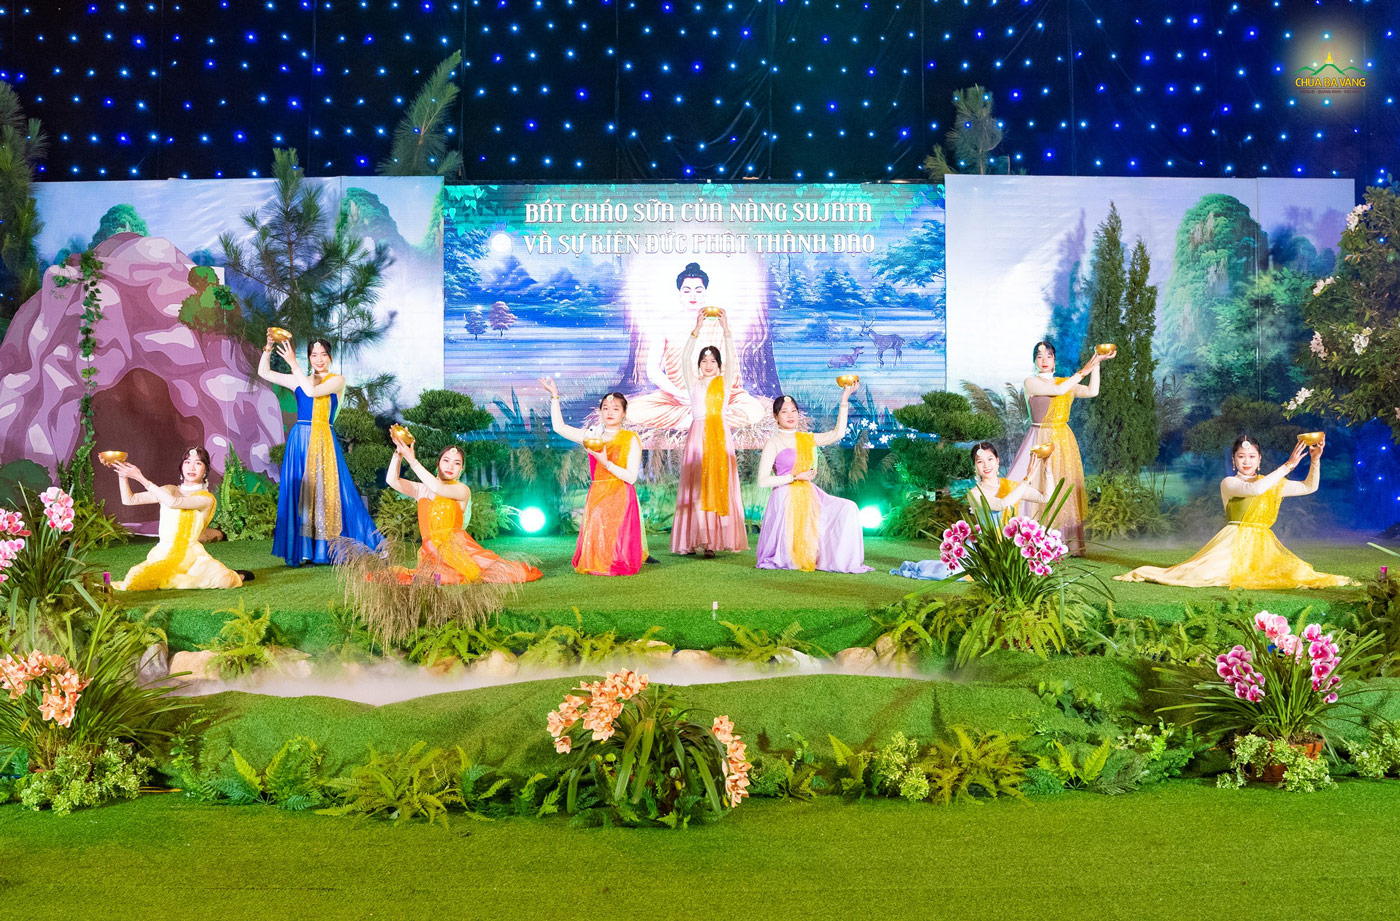 Vũ đoàn Dayna thể hiện tiết mục múa trong vở kịch “Bát cháo sữa của Nàng Sujata và sự kiện Đức Phật thành đạo”